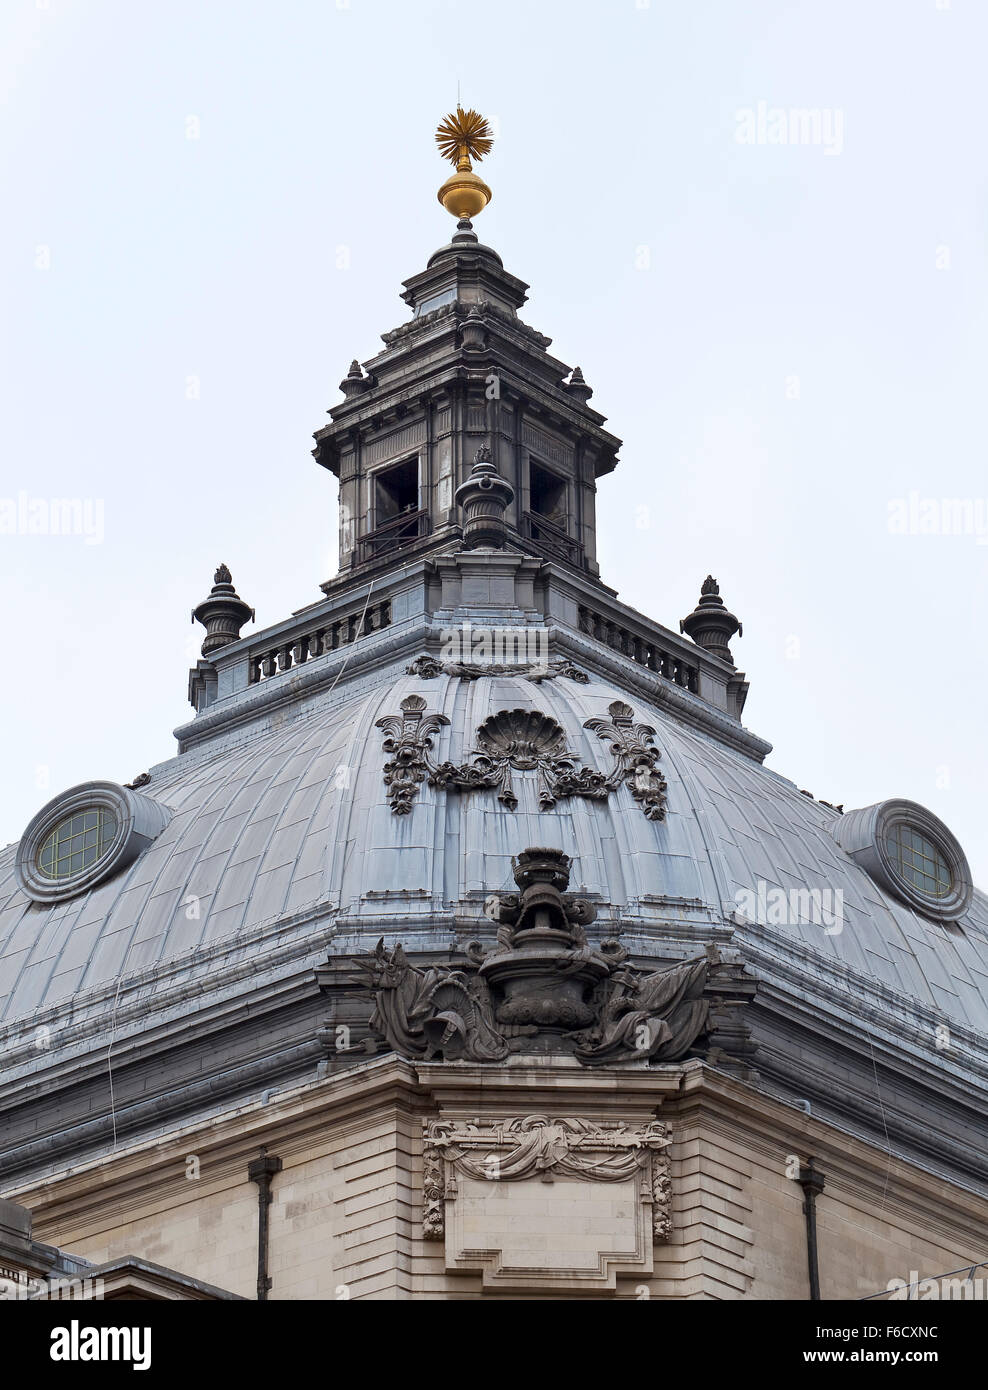 Symmetrie in der Architektur. Das Dach eines historischen Gebäudes in inner London ist symmetrisch um die Achse des komplizierten Daches Stockfoto